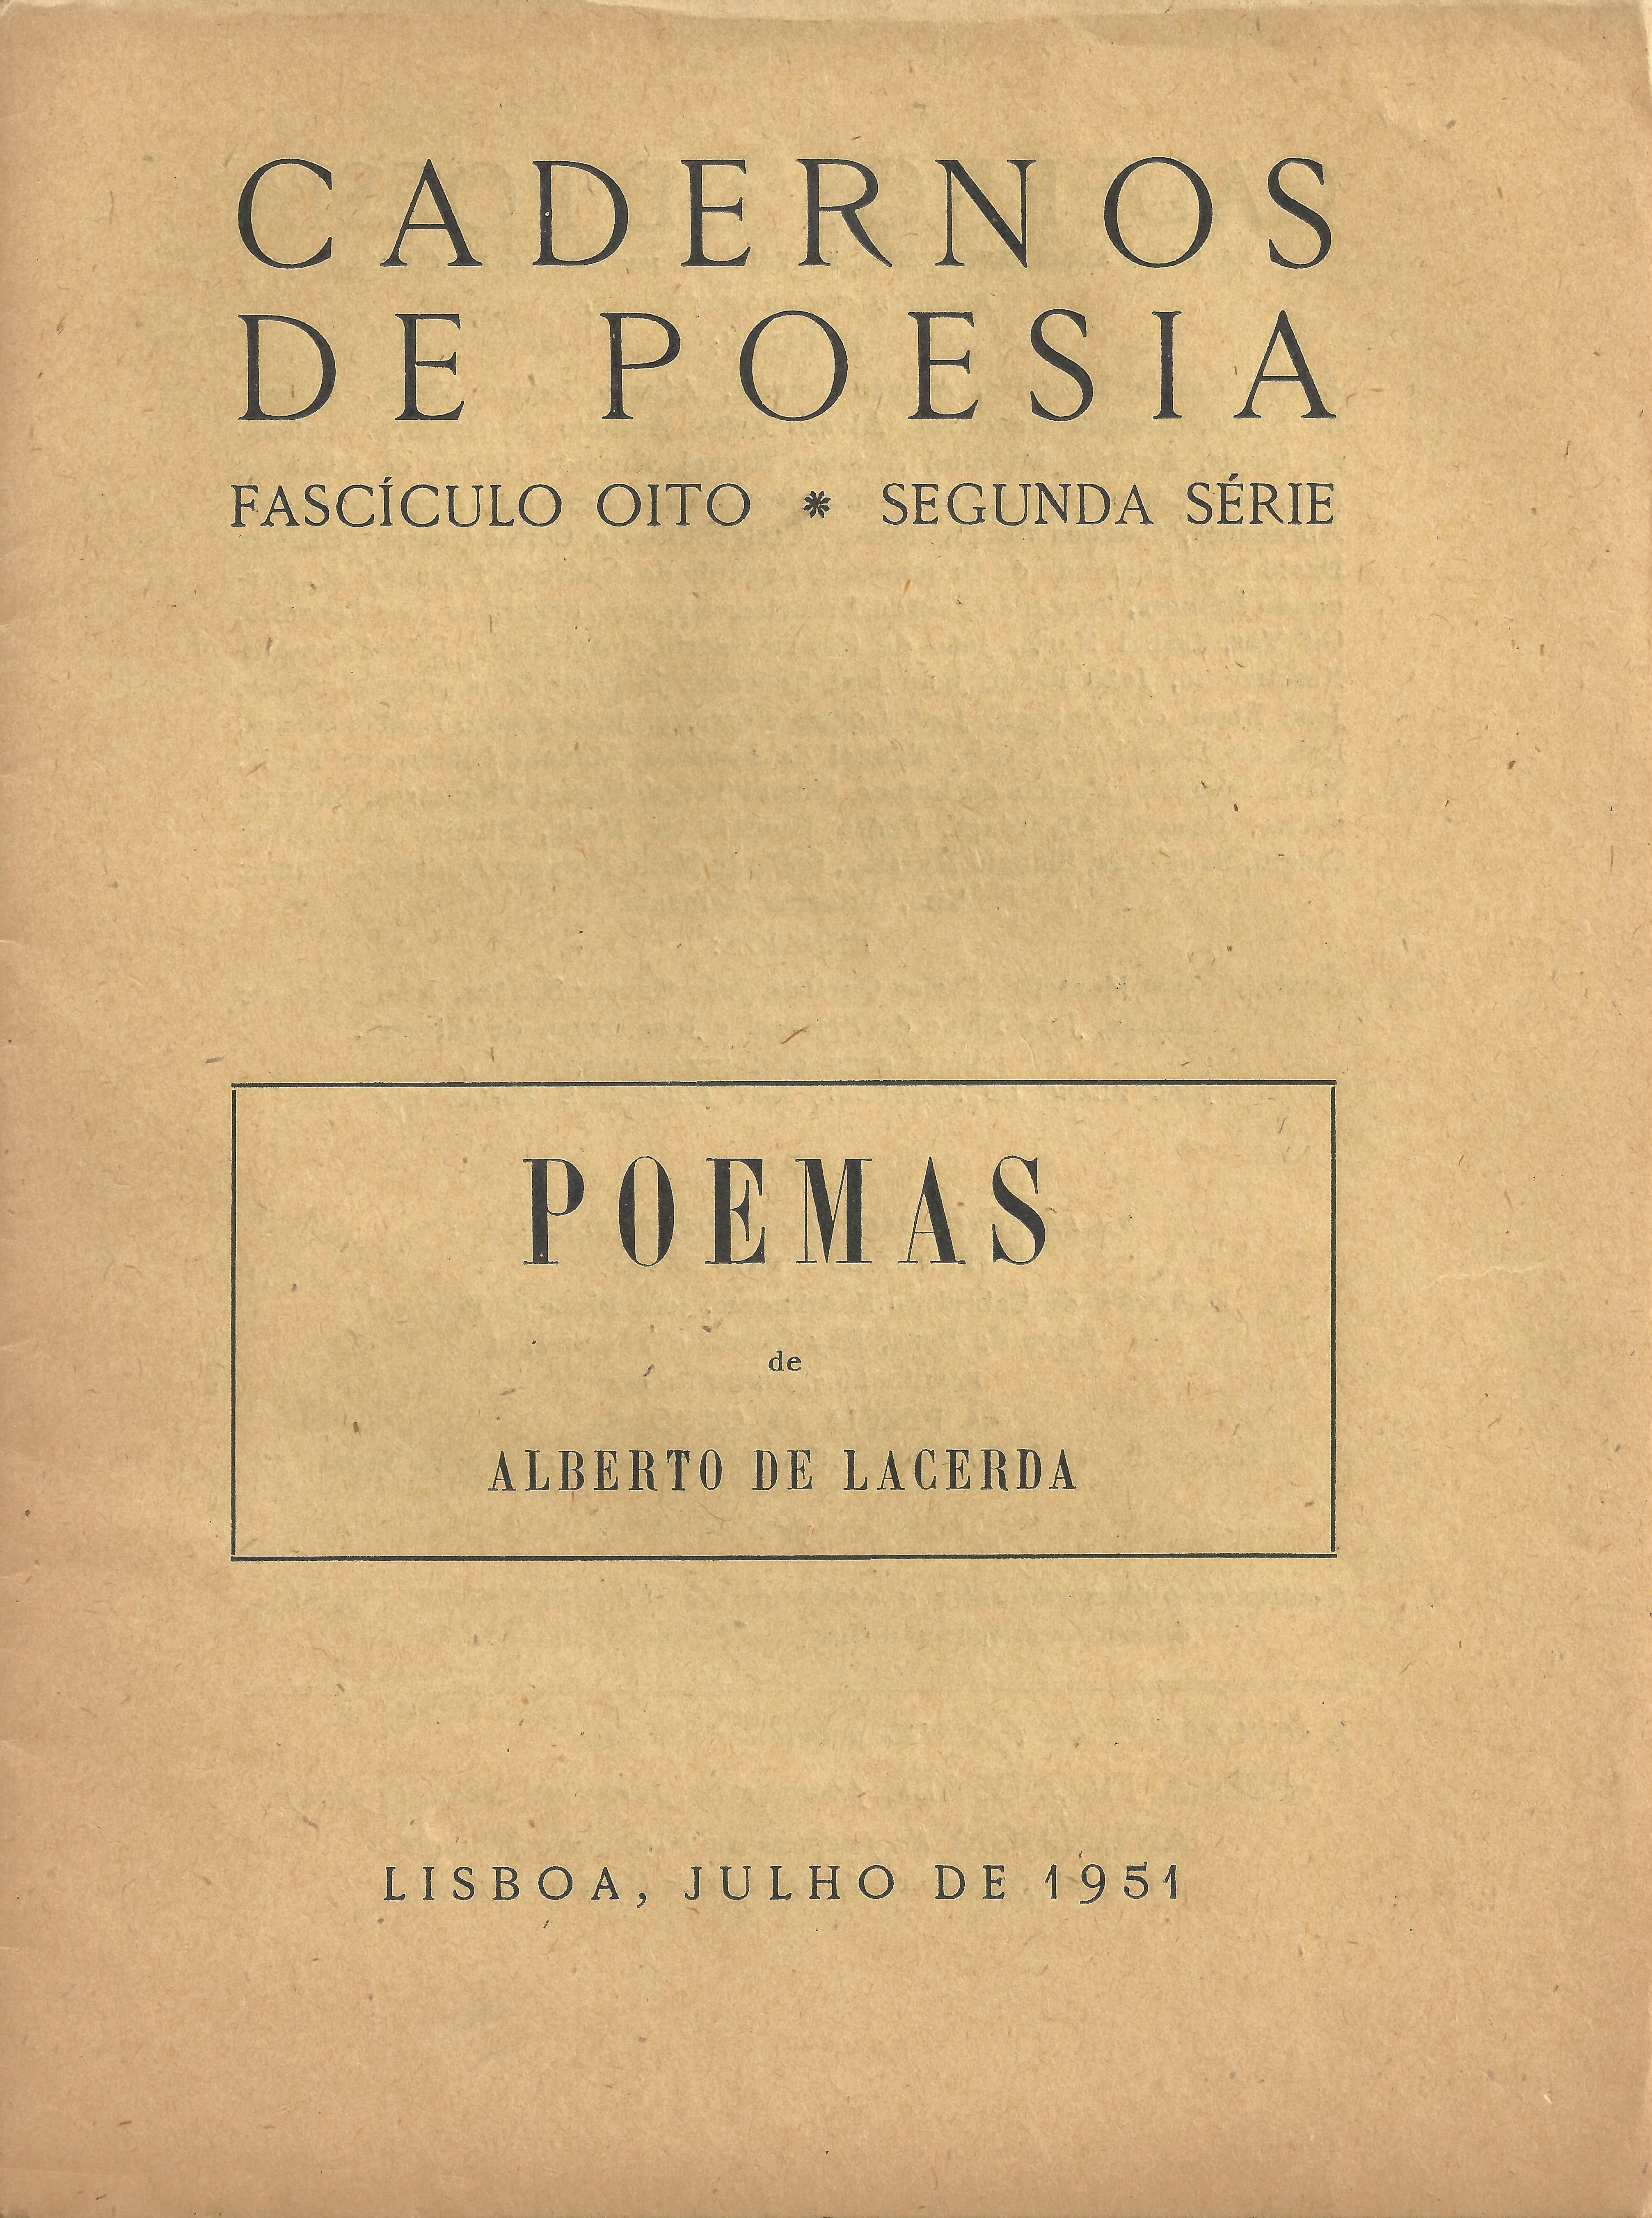 Poemas de Alberto de Lacerda. Lisbon: Cadernos de Poesia, July 1951